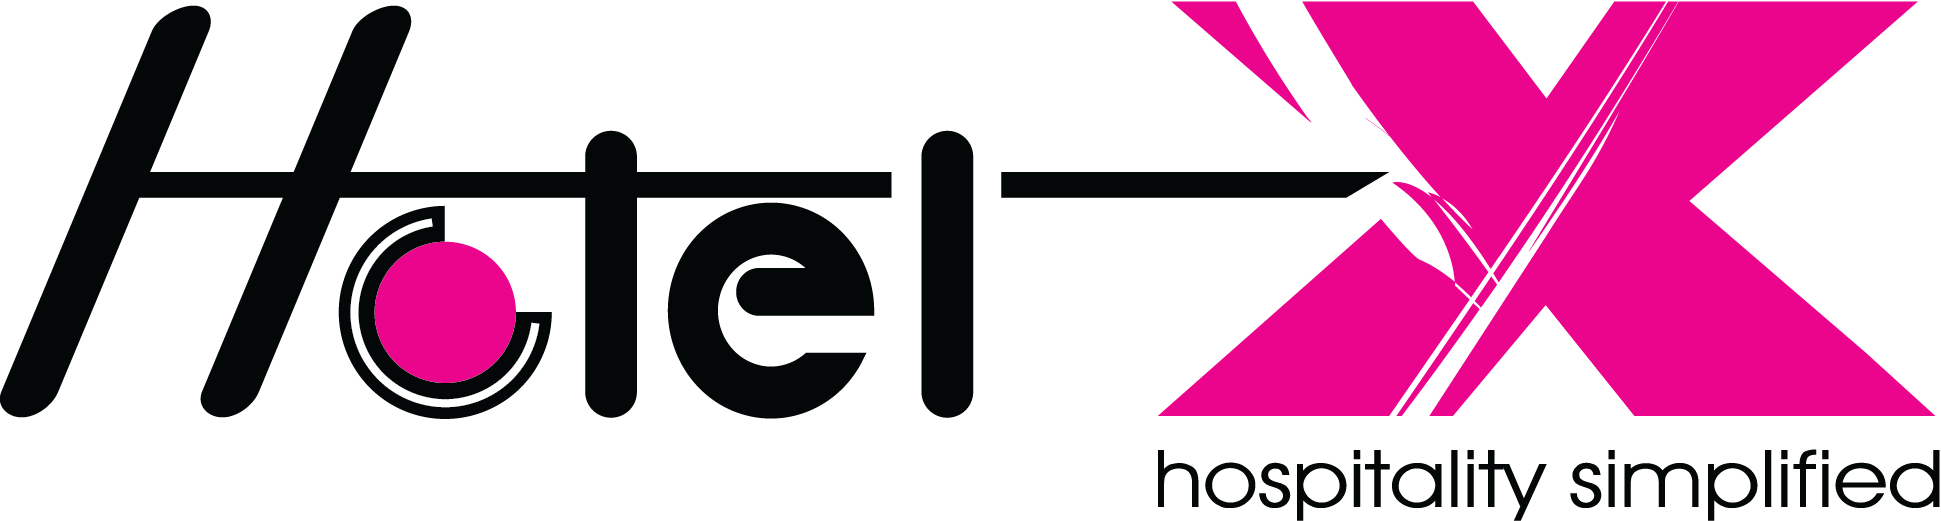 Hotel X logo (1)